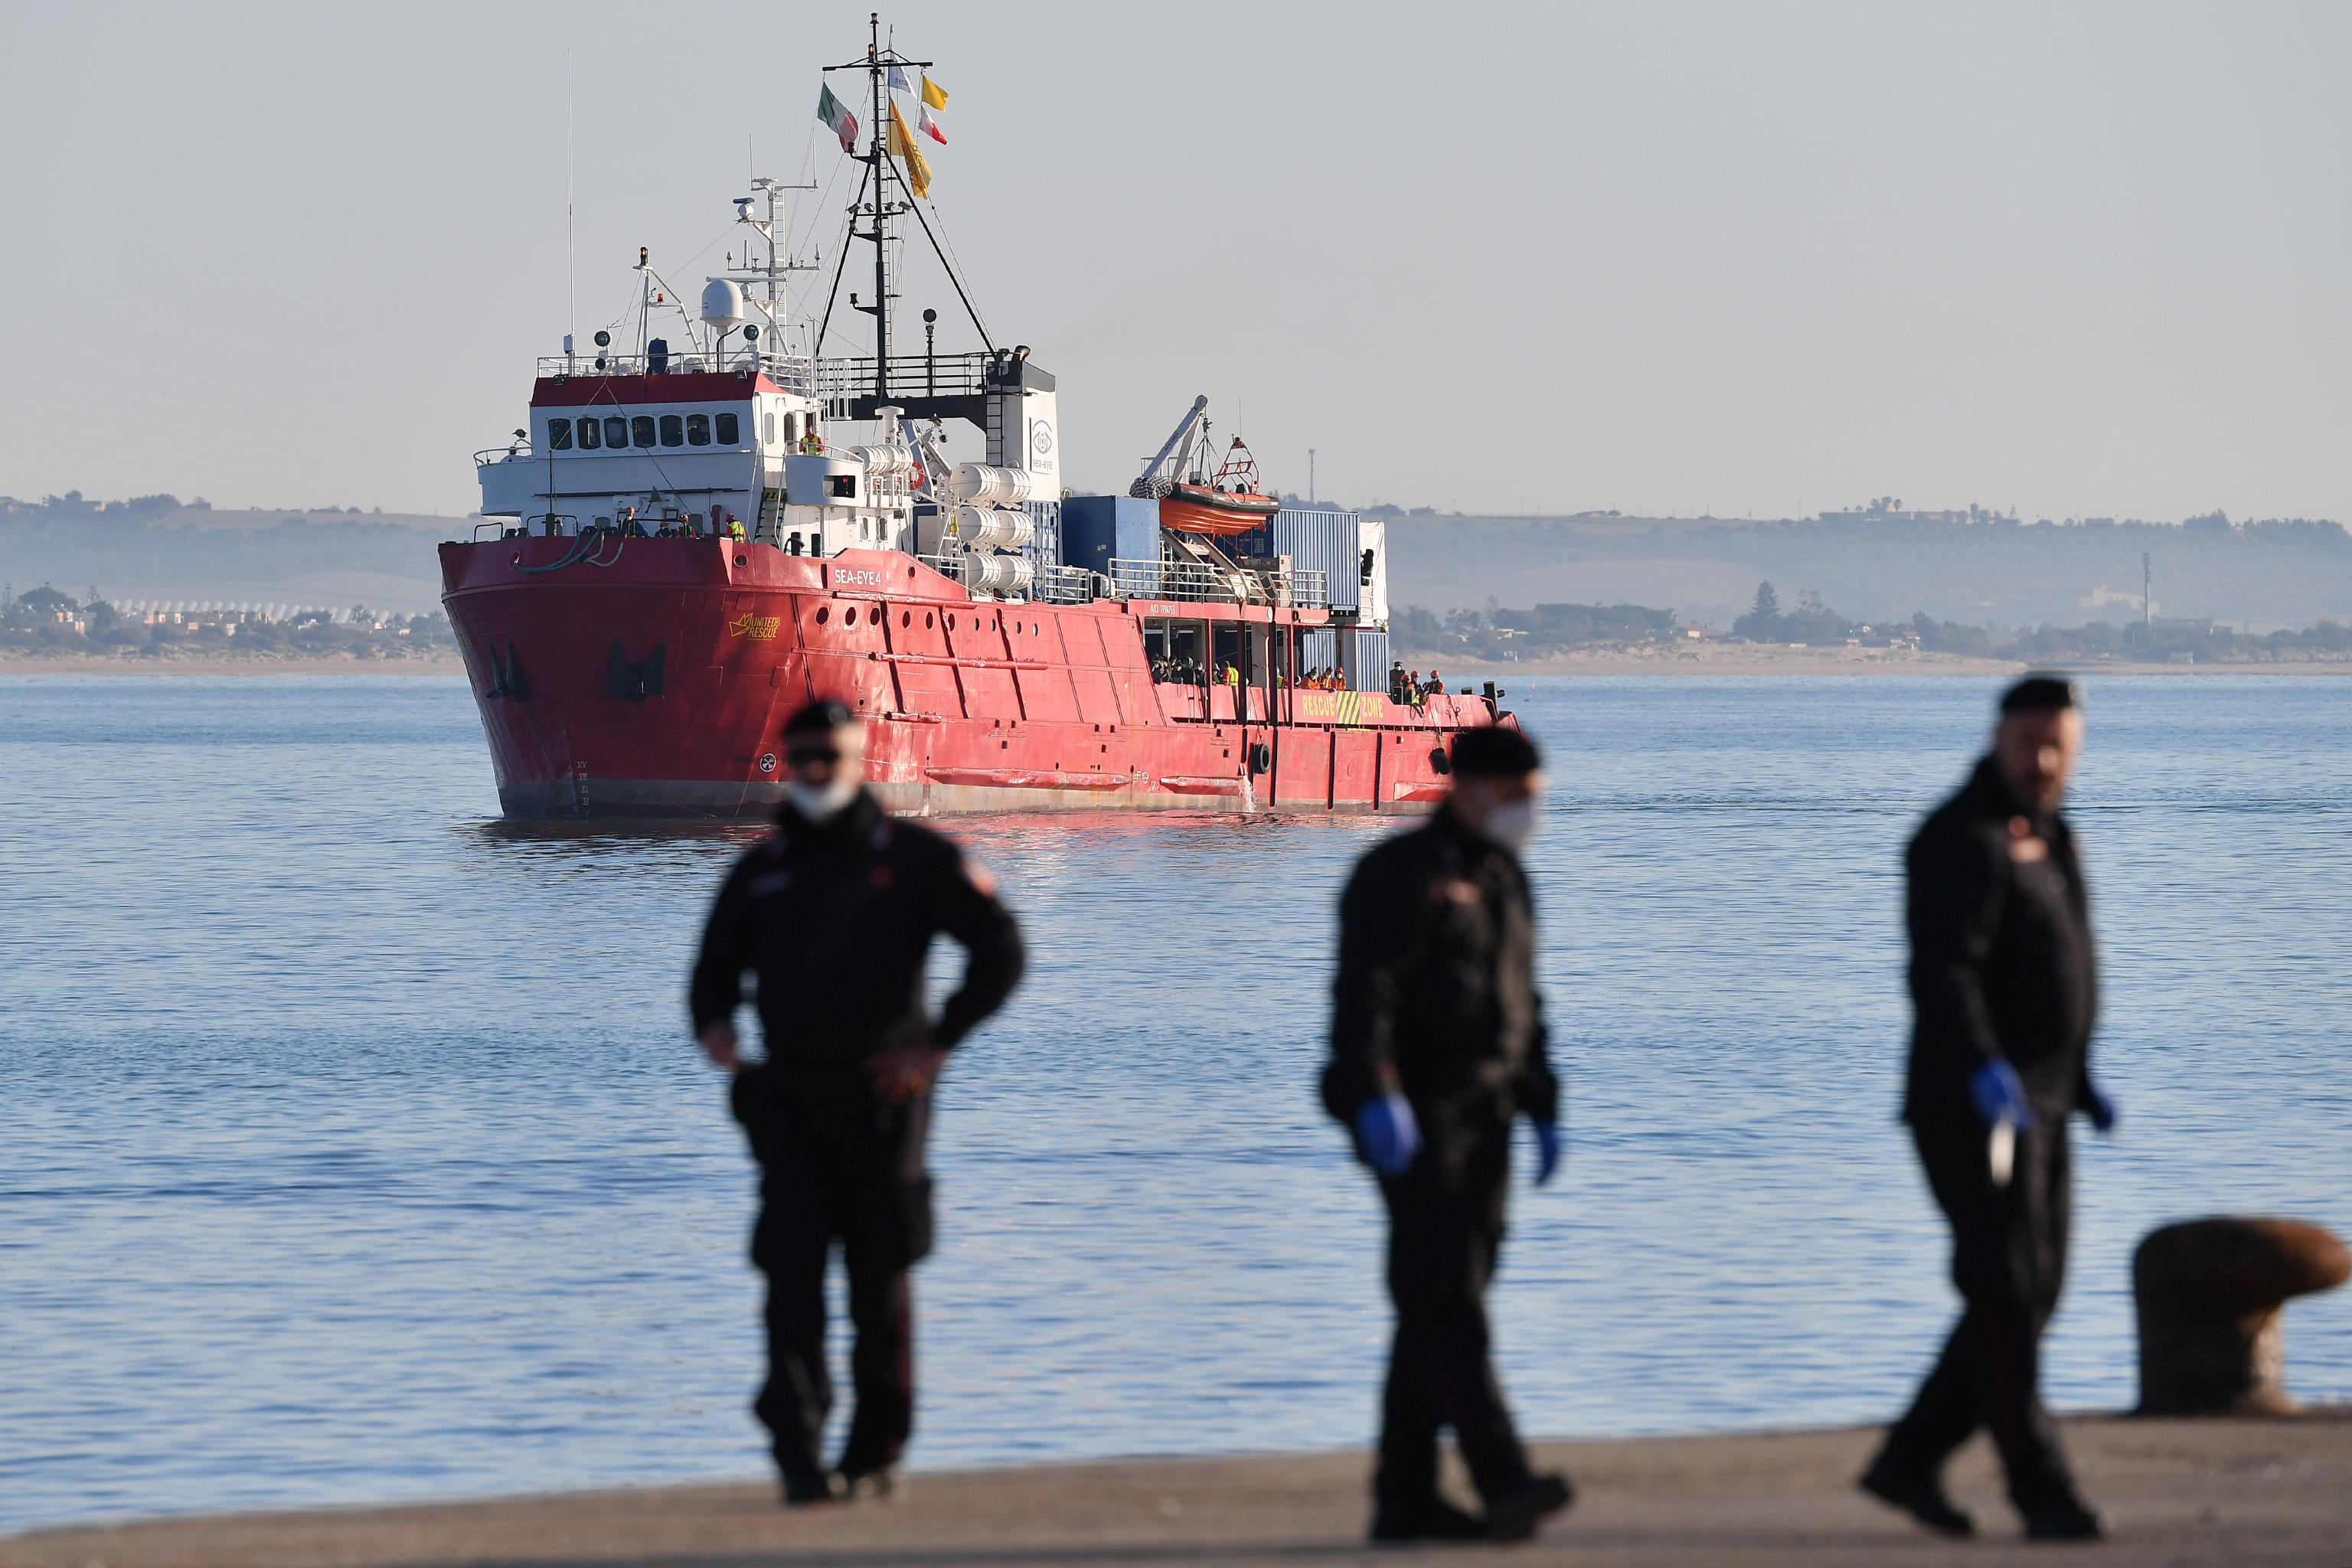  السفينة "عين البحر 4" التابعة لمنظمة الإنقاذ البحري الألمانية تصل إلى ميناء بوزالو(دب أ)